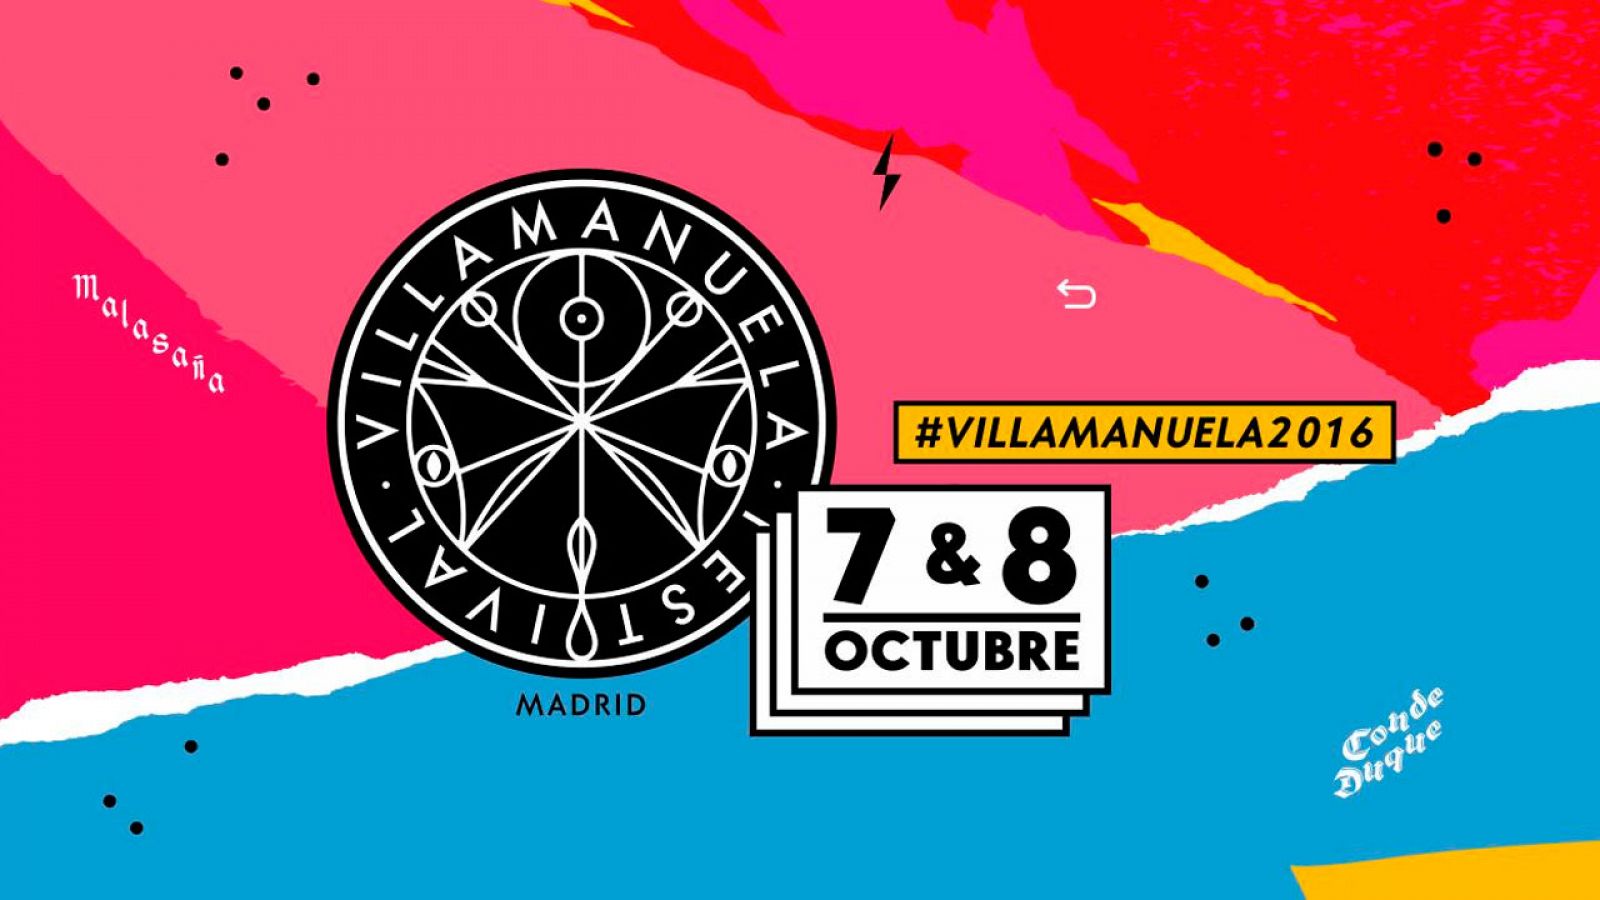 VillaManuela 2016